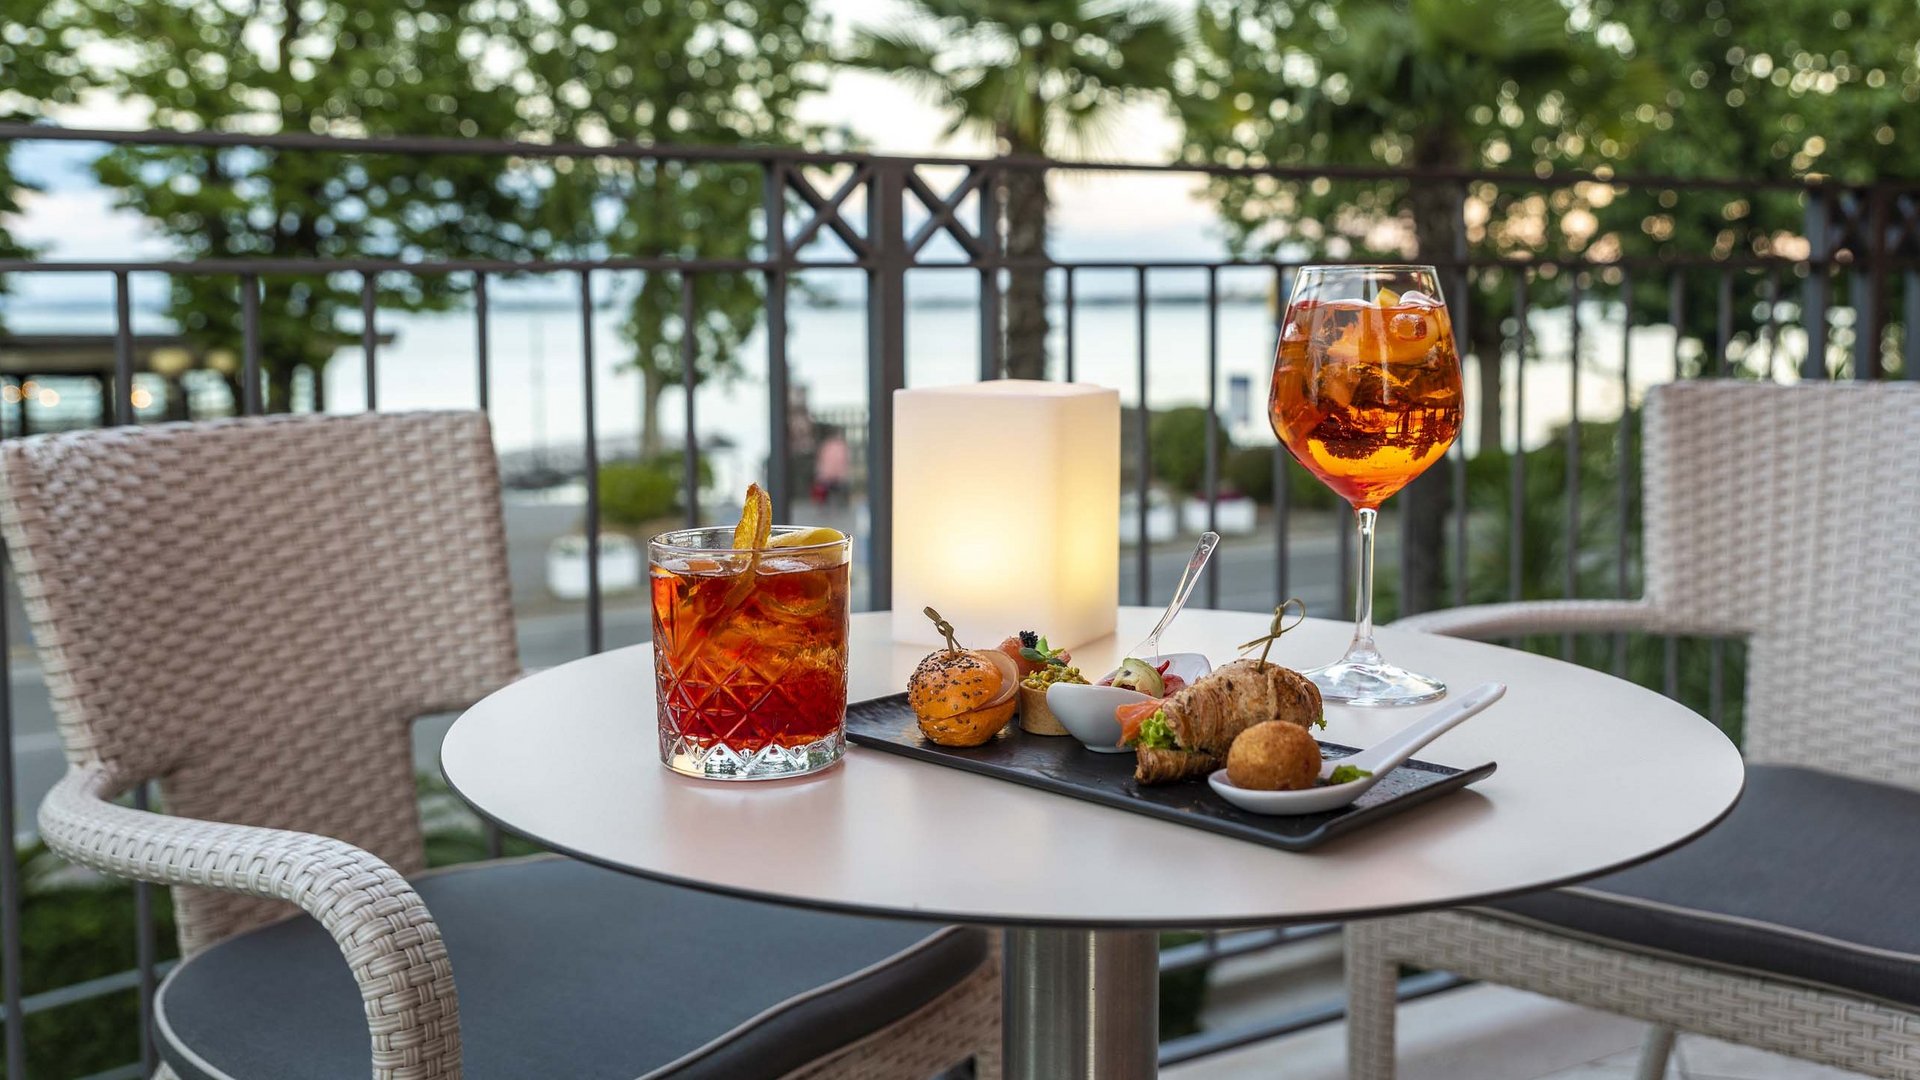 Gardasee, 4-Sterne-Hotel mit Lounge Bar & Terrace